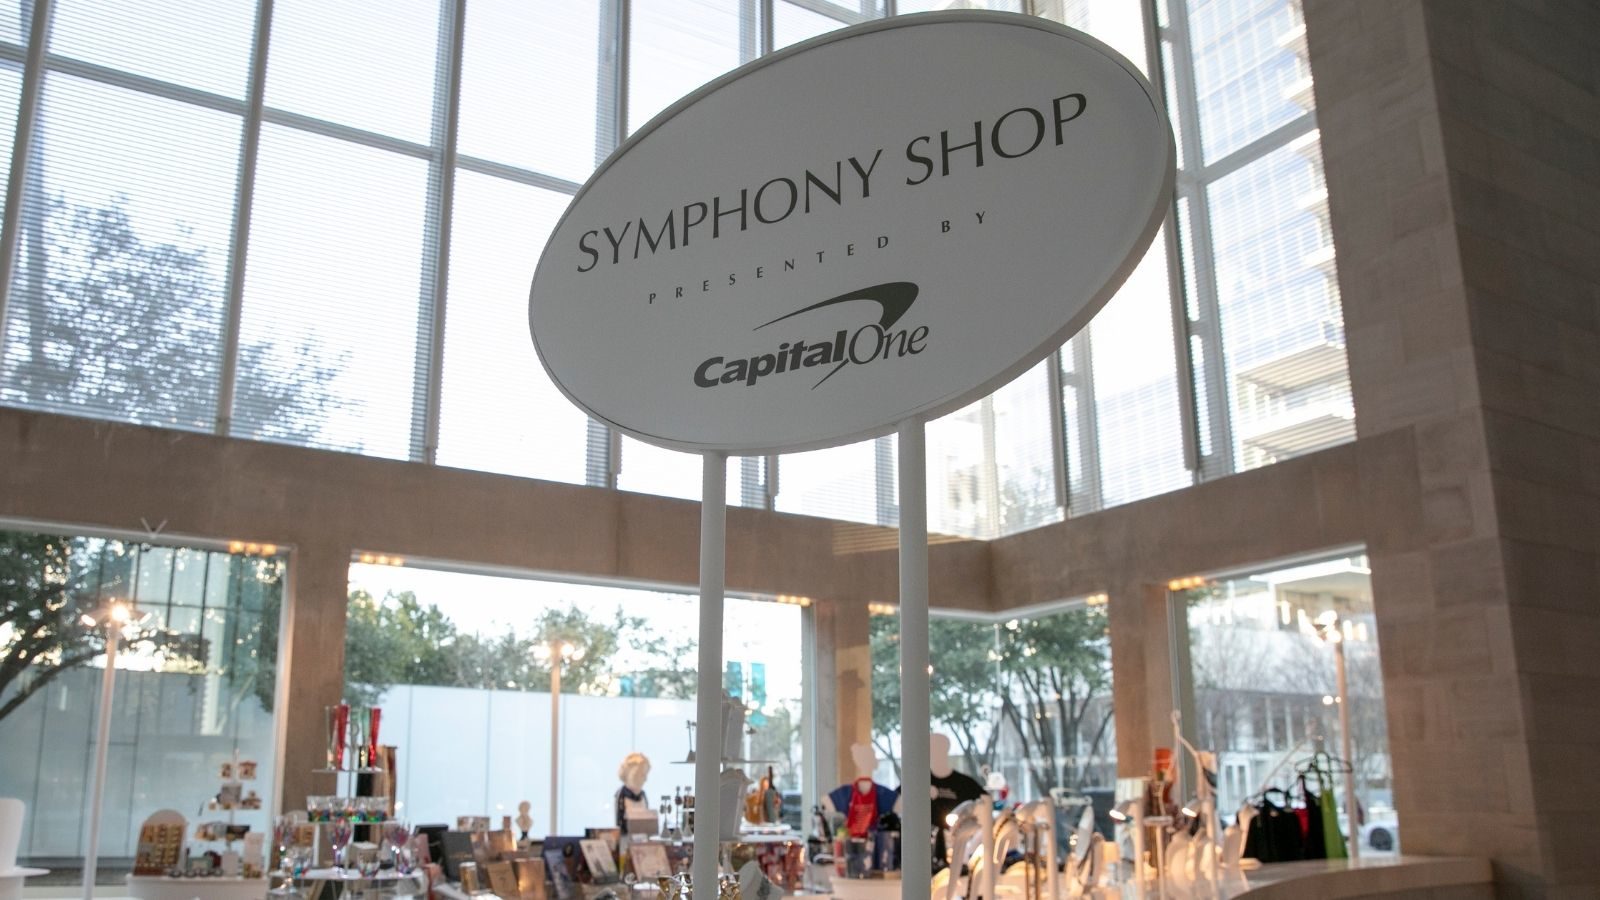 Cartel de la tienda Capital One Symphony